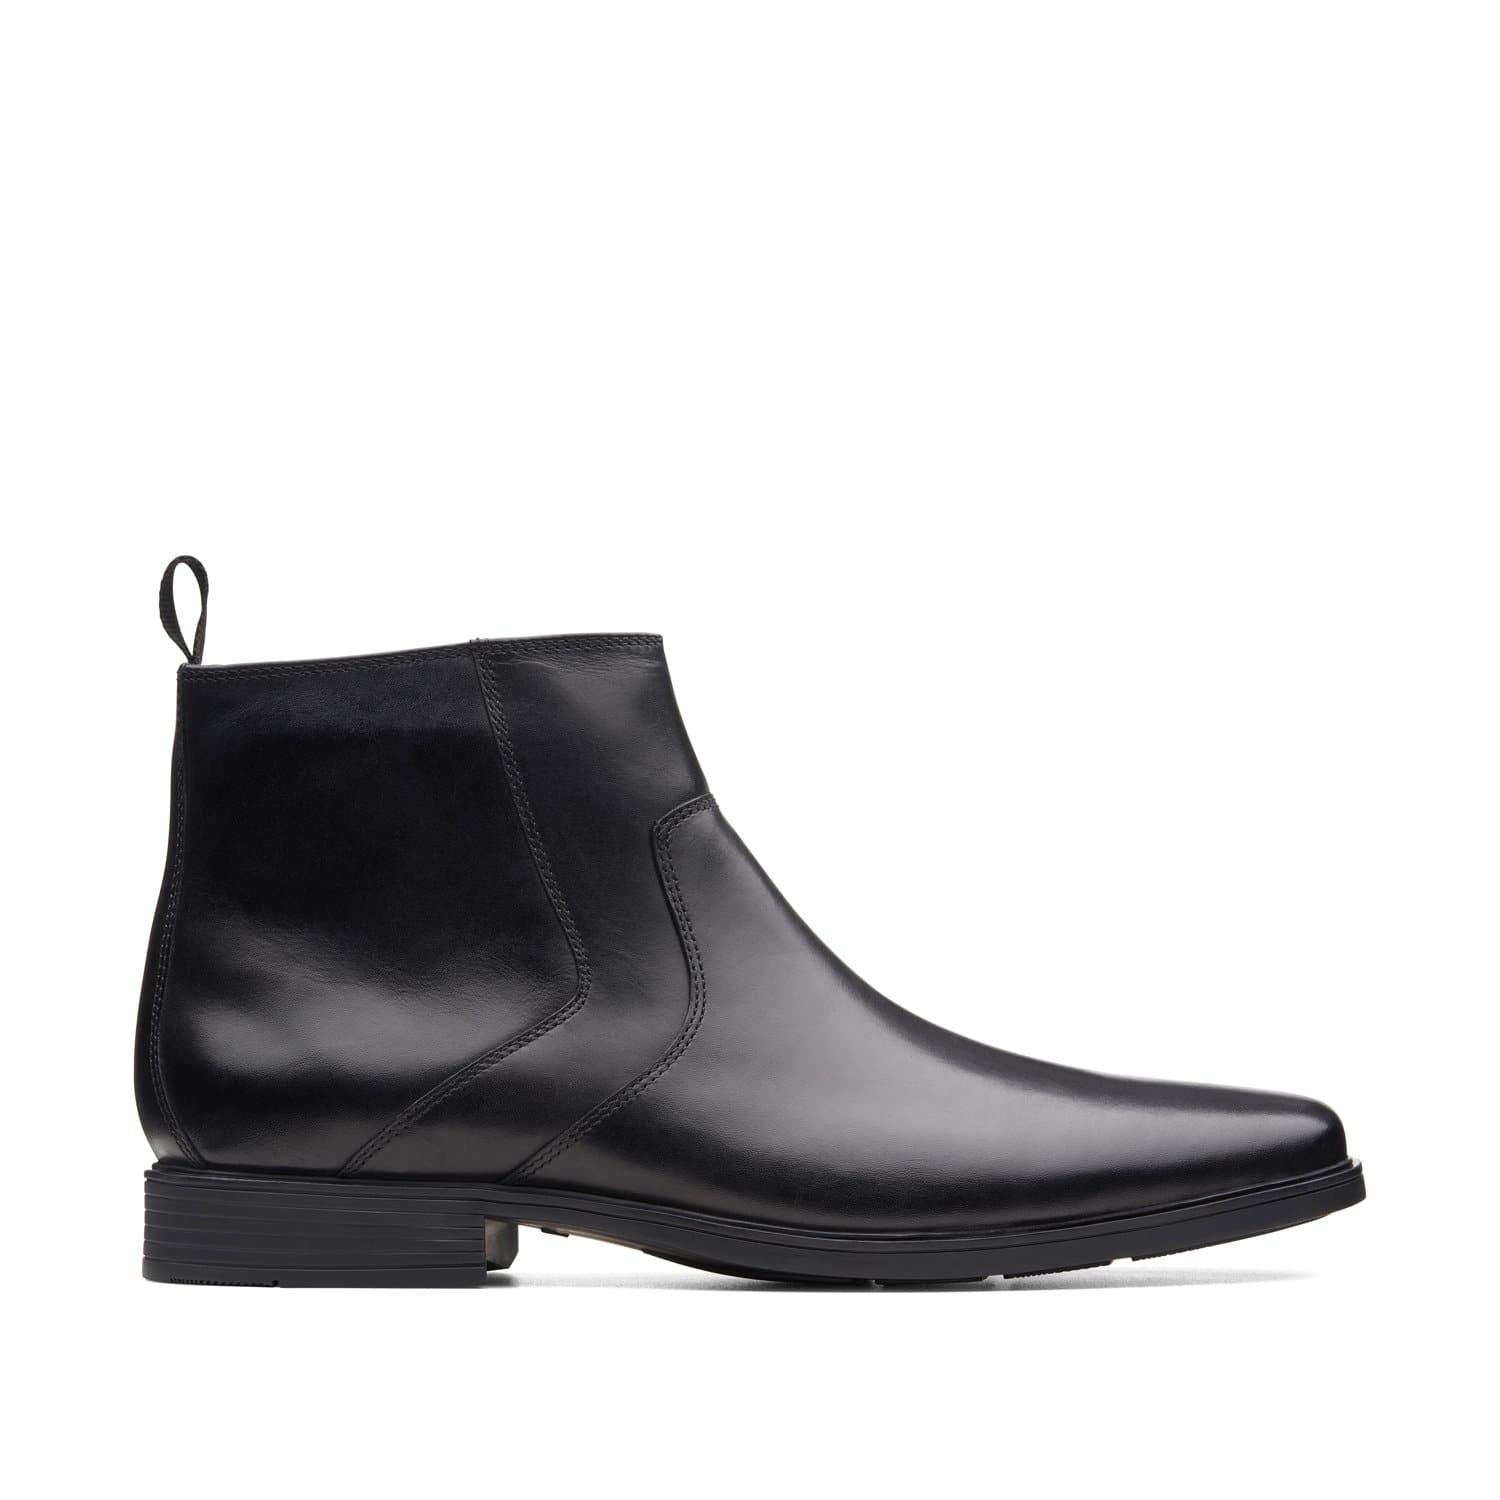 Clarks-Tilden-Up-Men's-Boots-Black-Leather-26146803